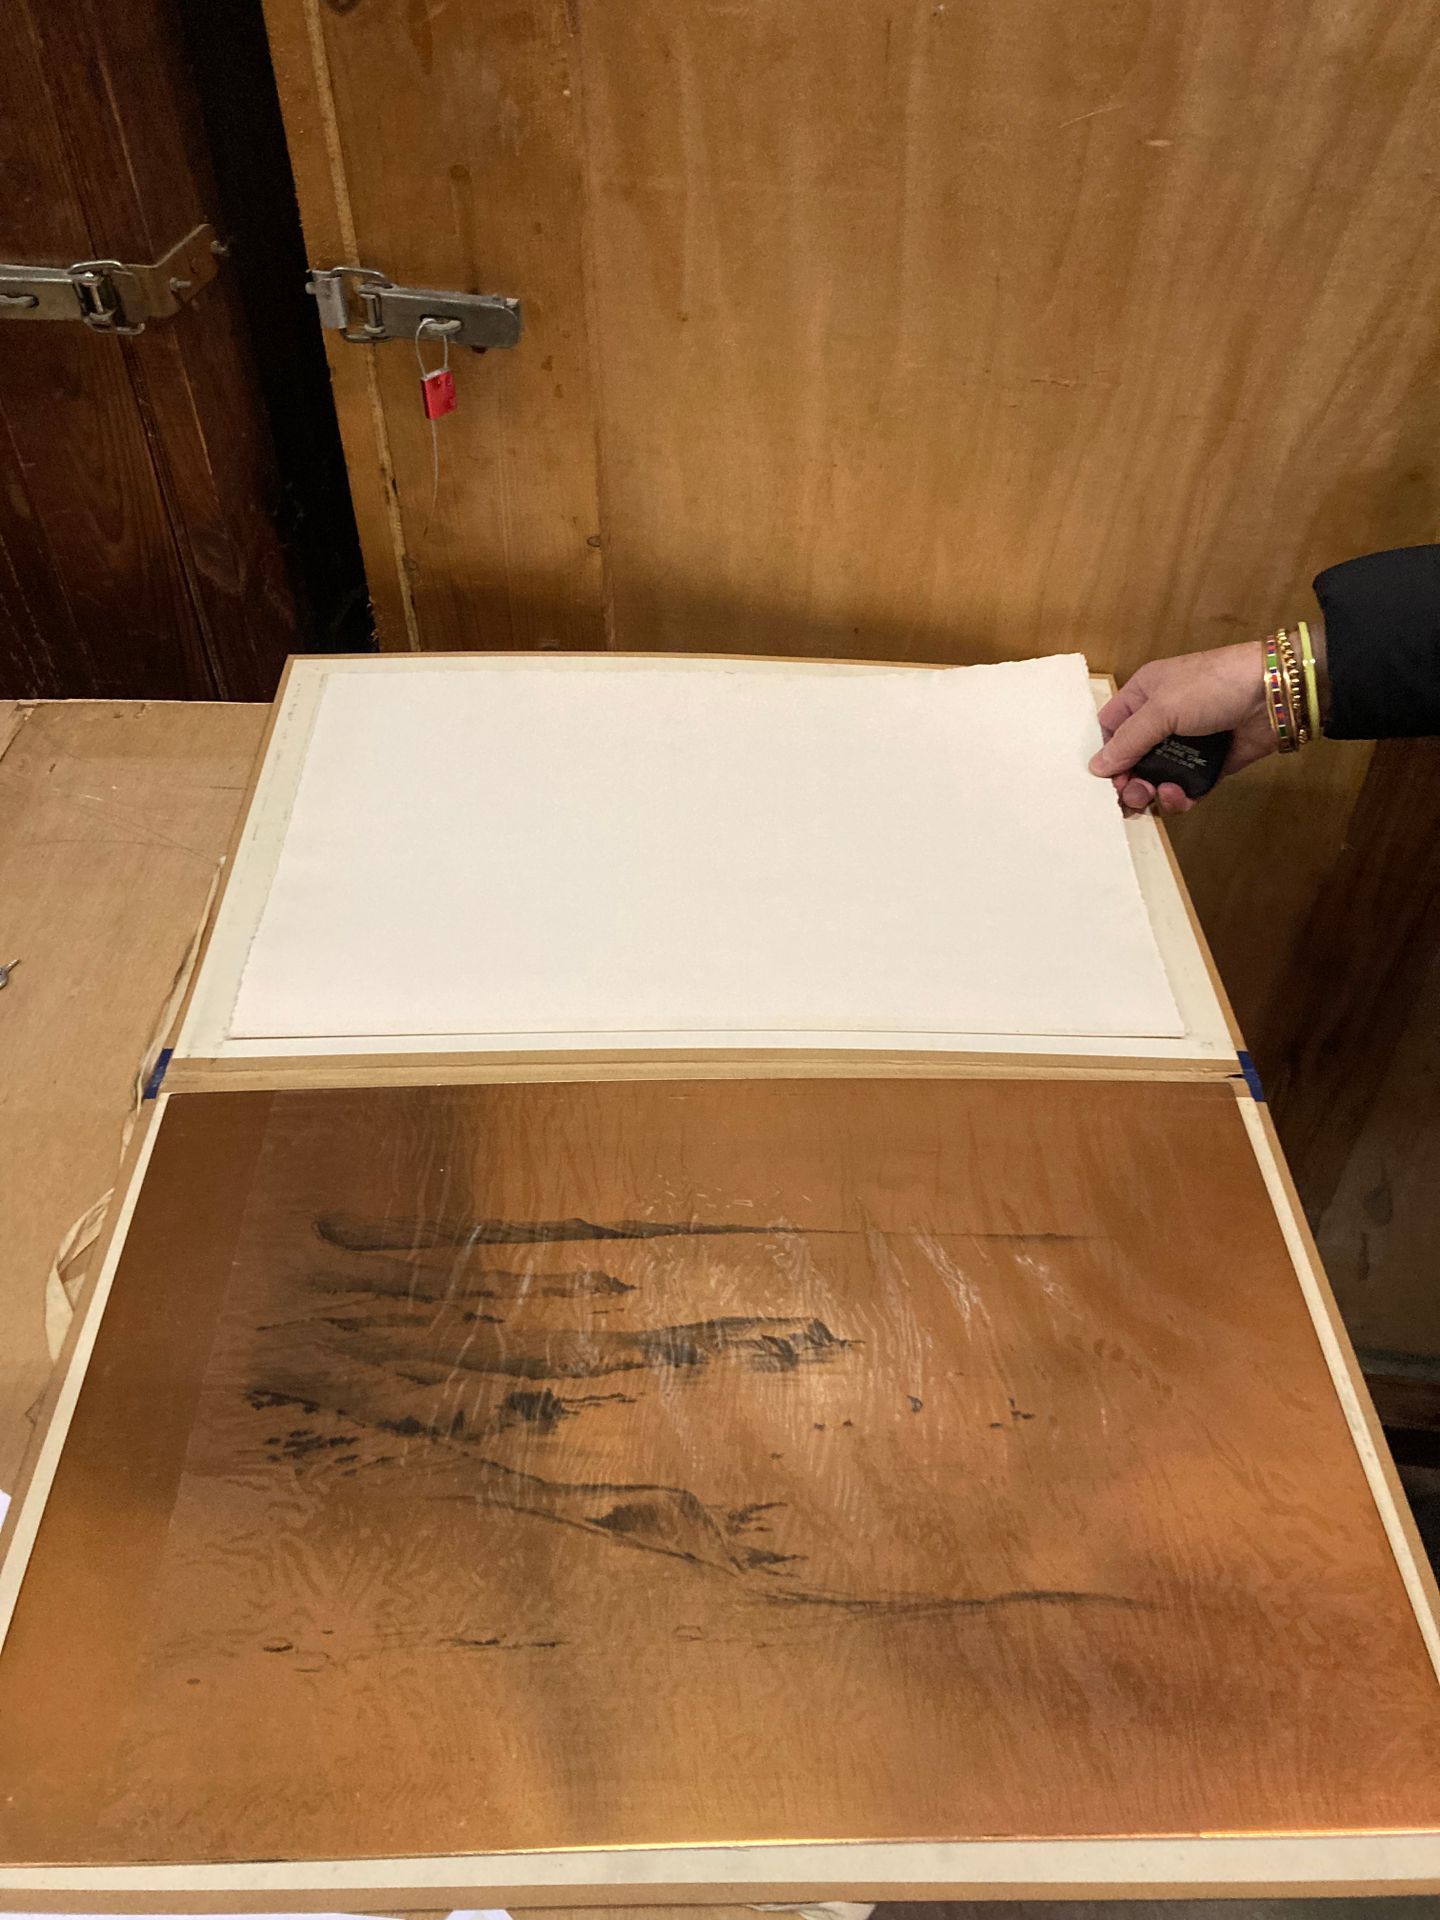 ECHARD ECHARD
Le scogliere
Tavola da disegno comprendente il disegno originale a&hellip;